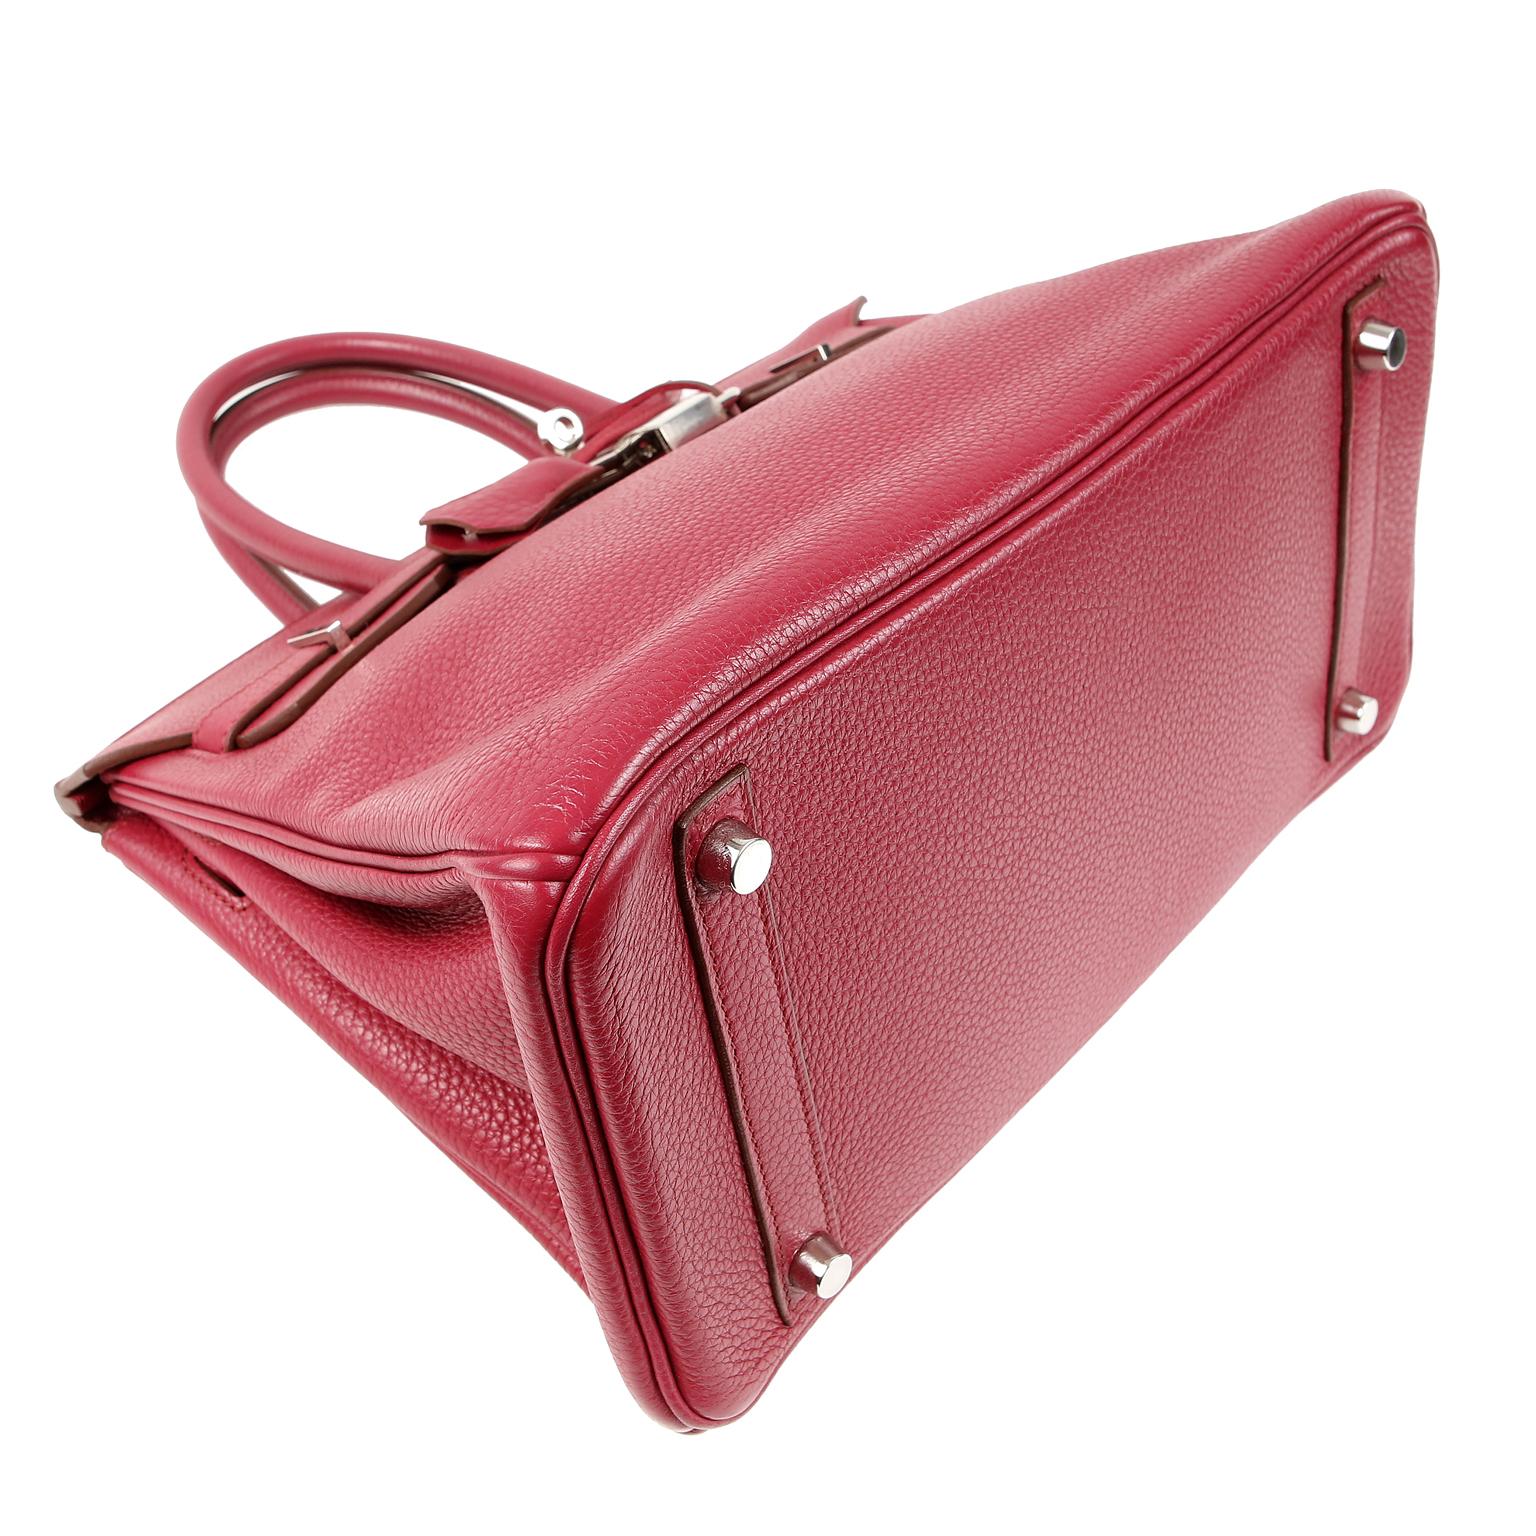 ruby red handbags